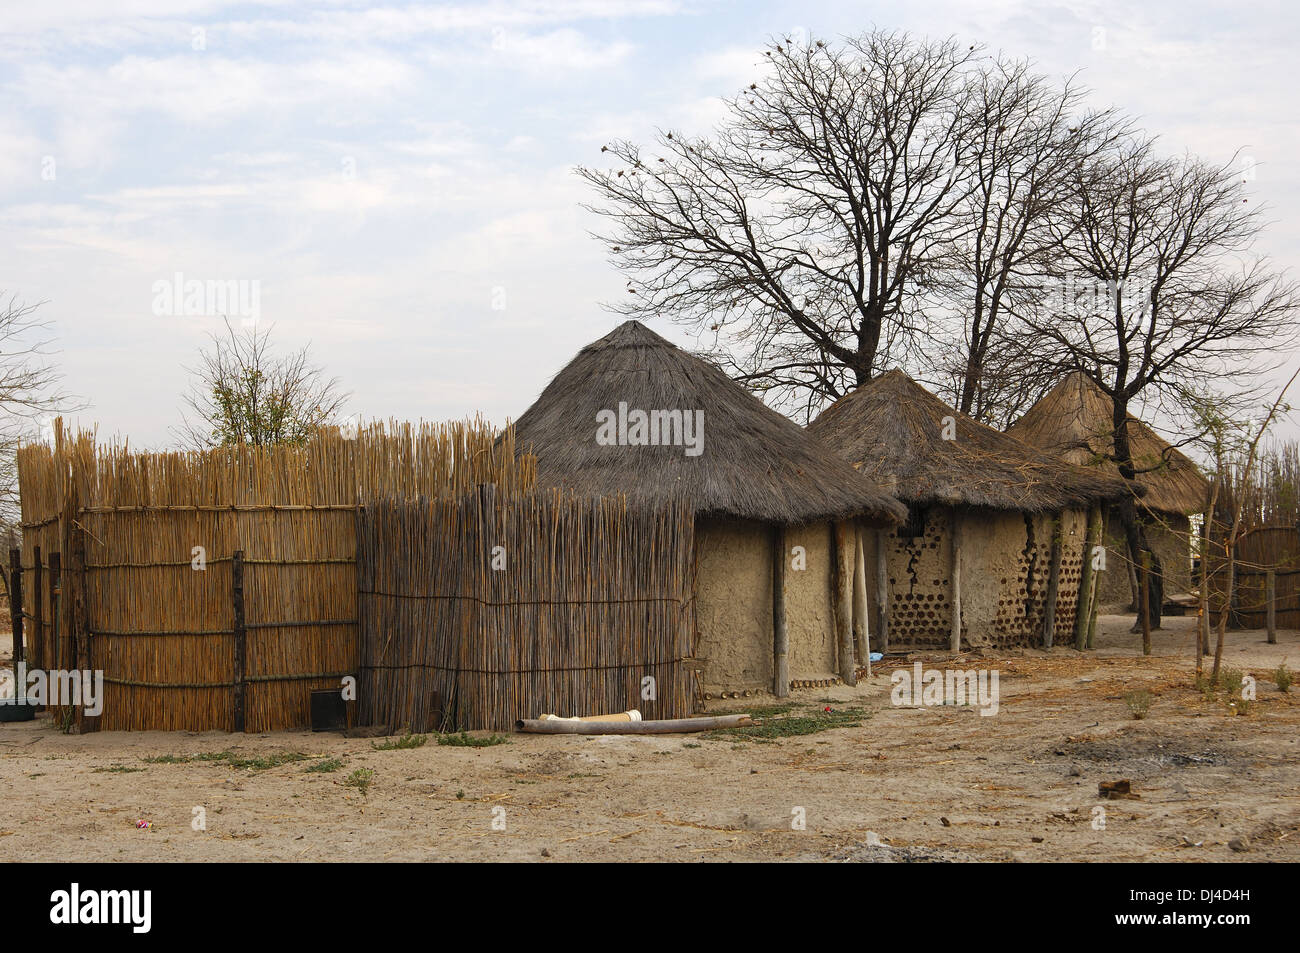 Traditional African kraal, Botswana Stock Photo